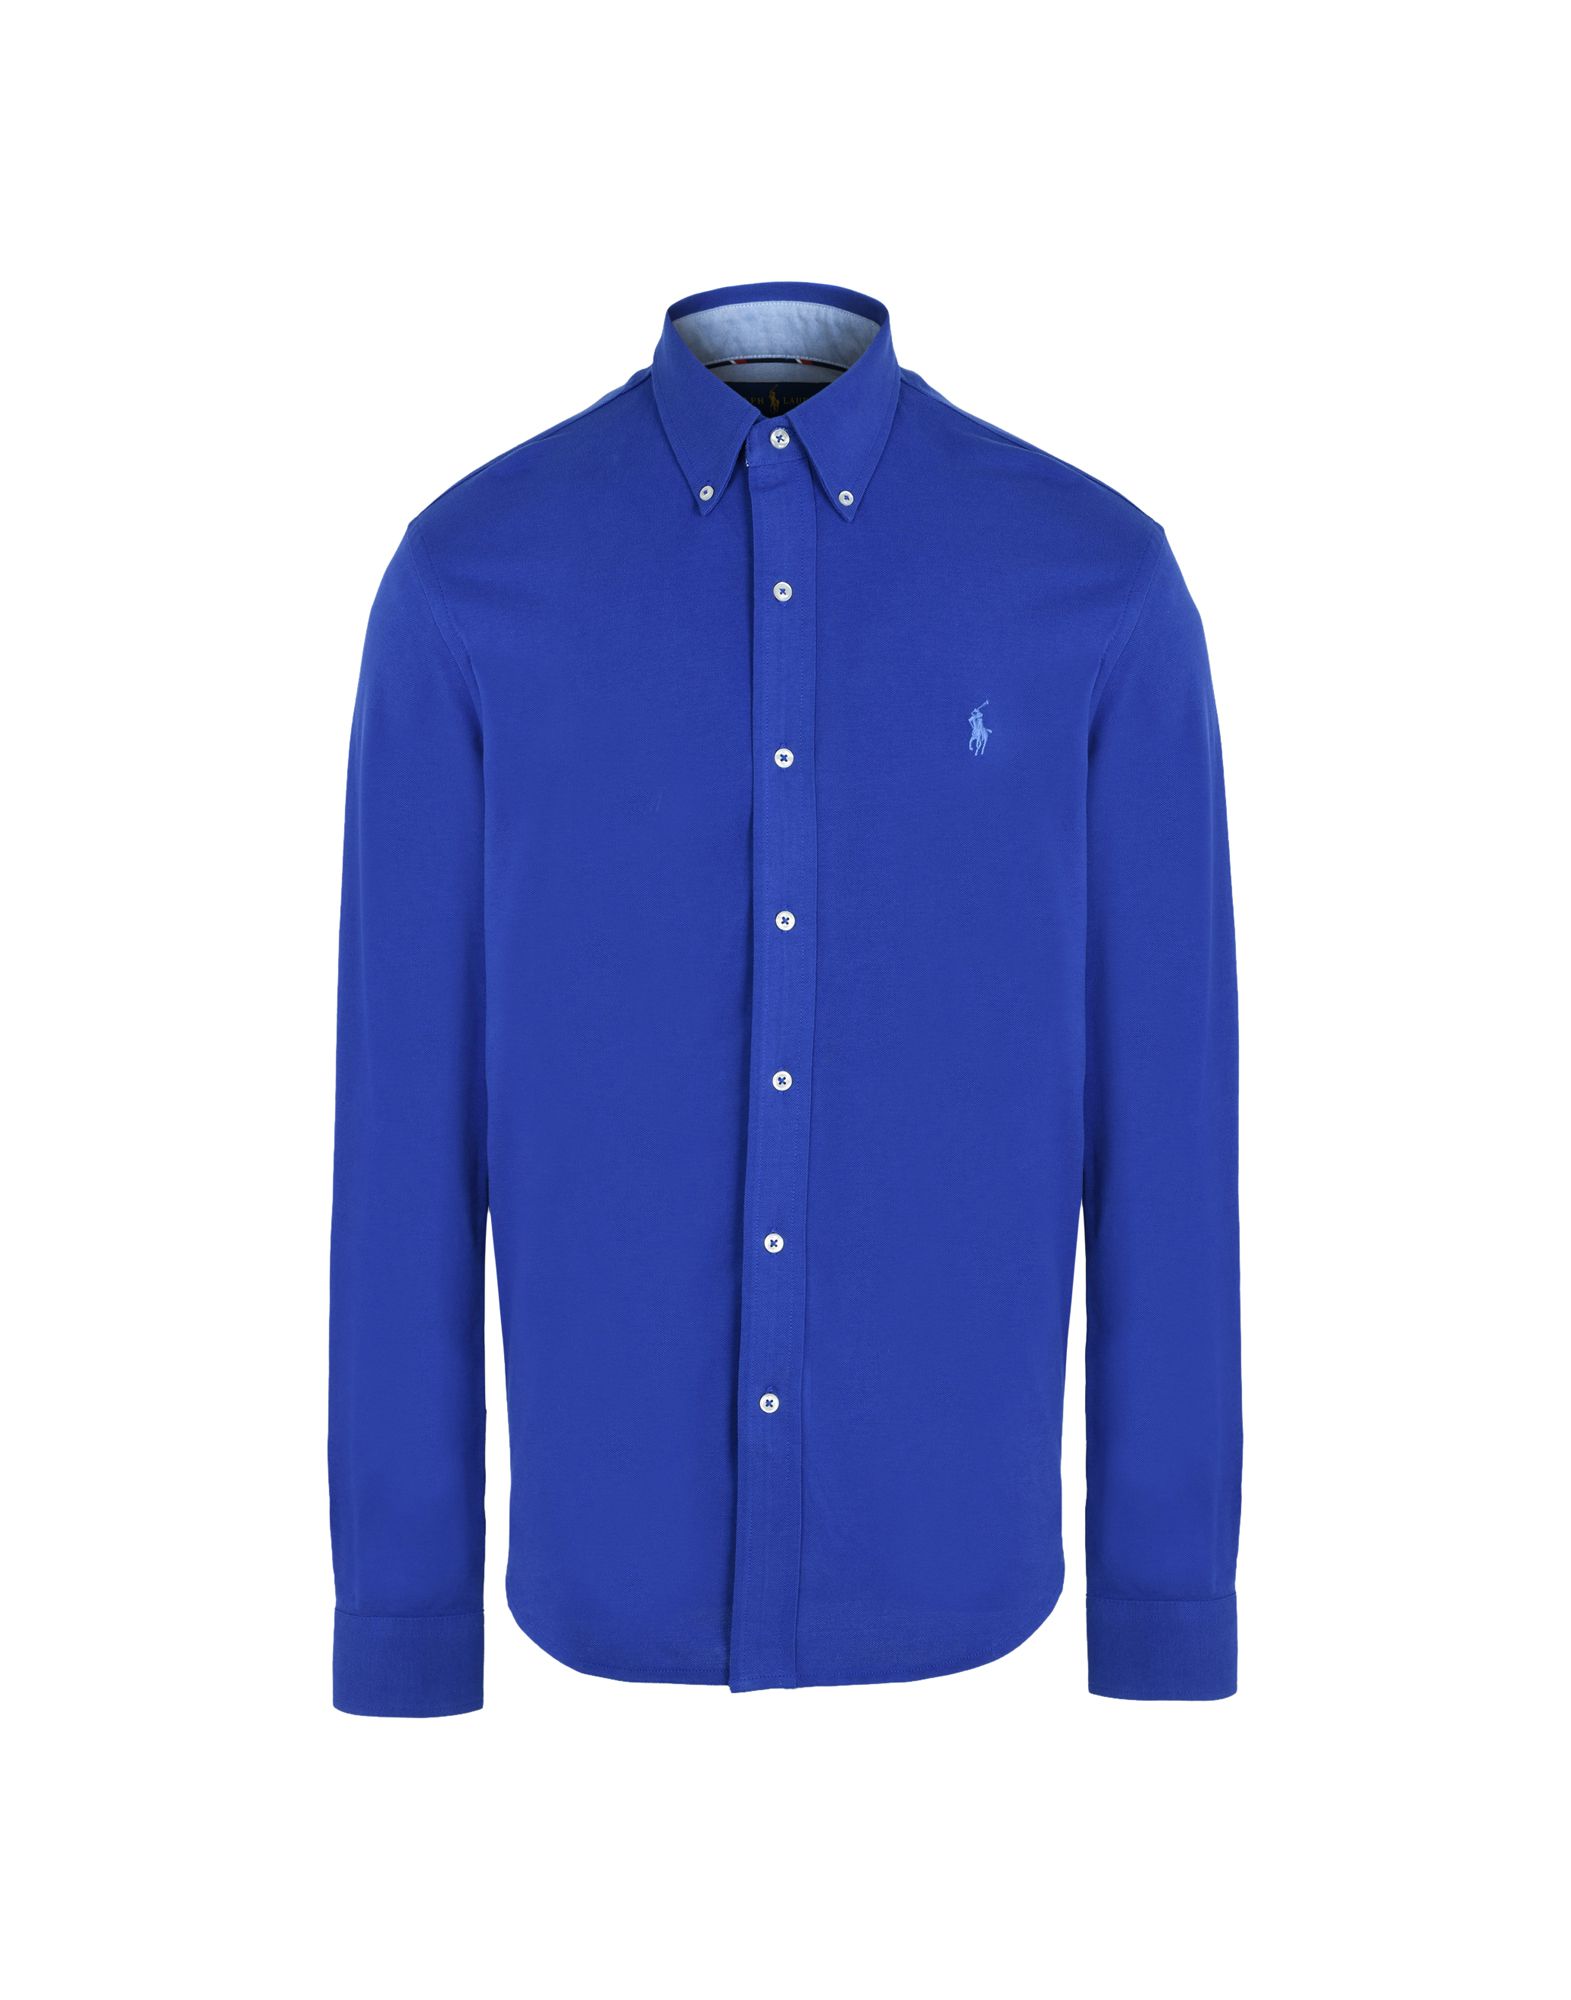 《送料無料》POLO RALPH LAUREN メンズ シャツ ブライトブルー S コットン 100% Custom Fit Knitted Shirt